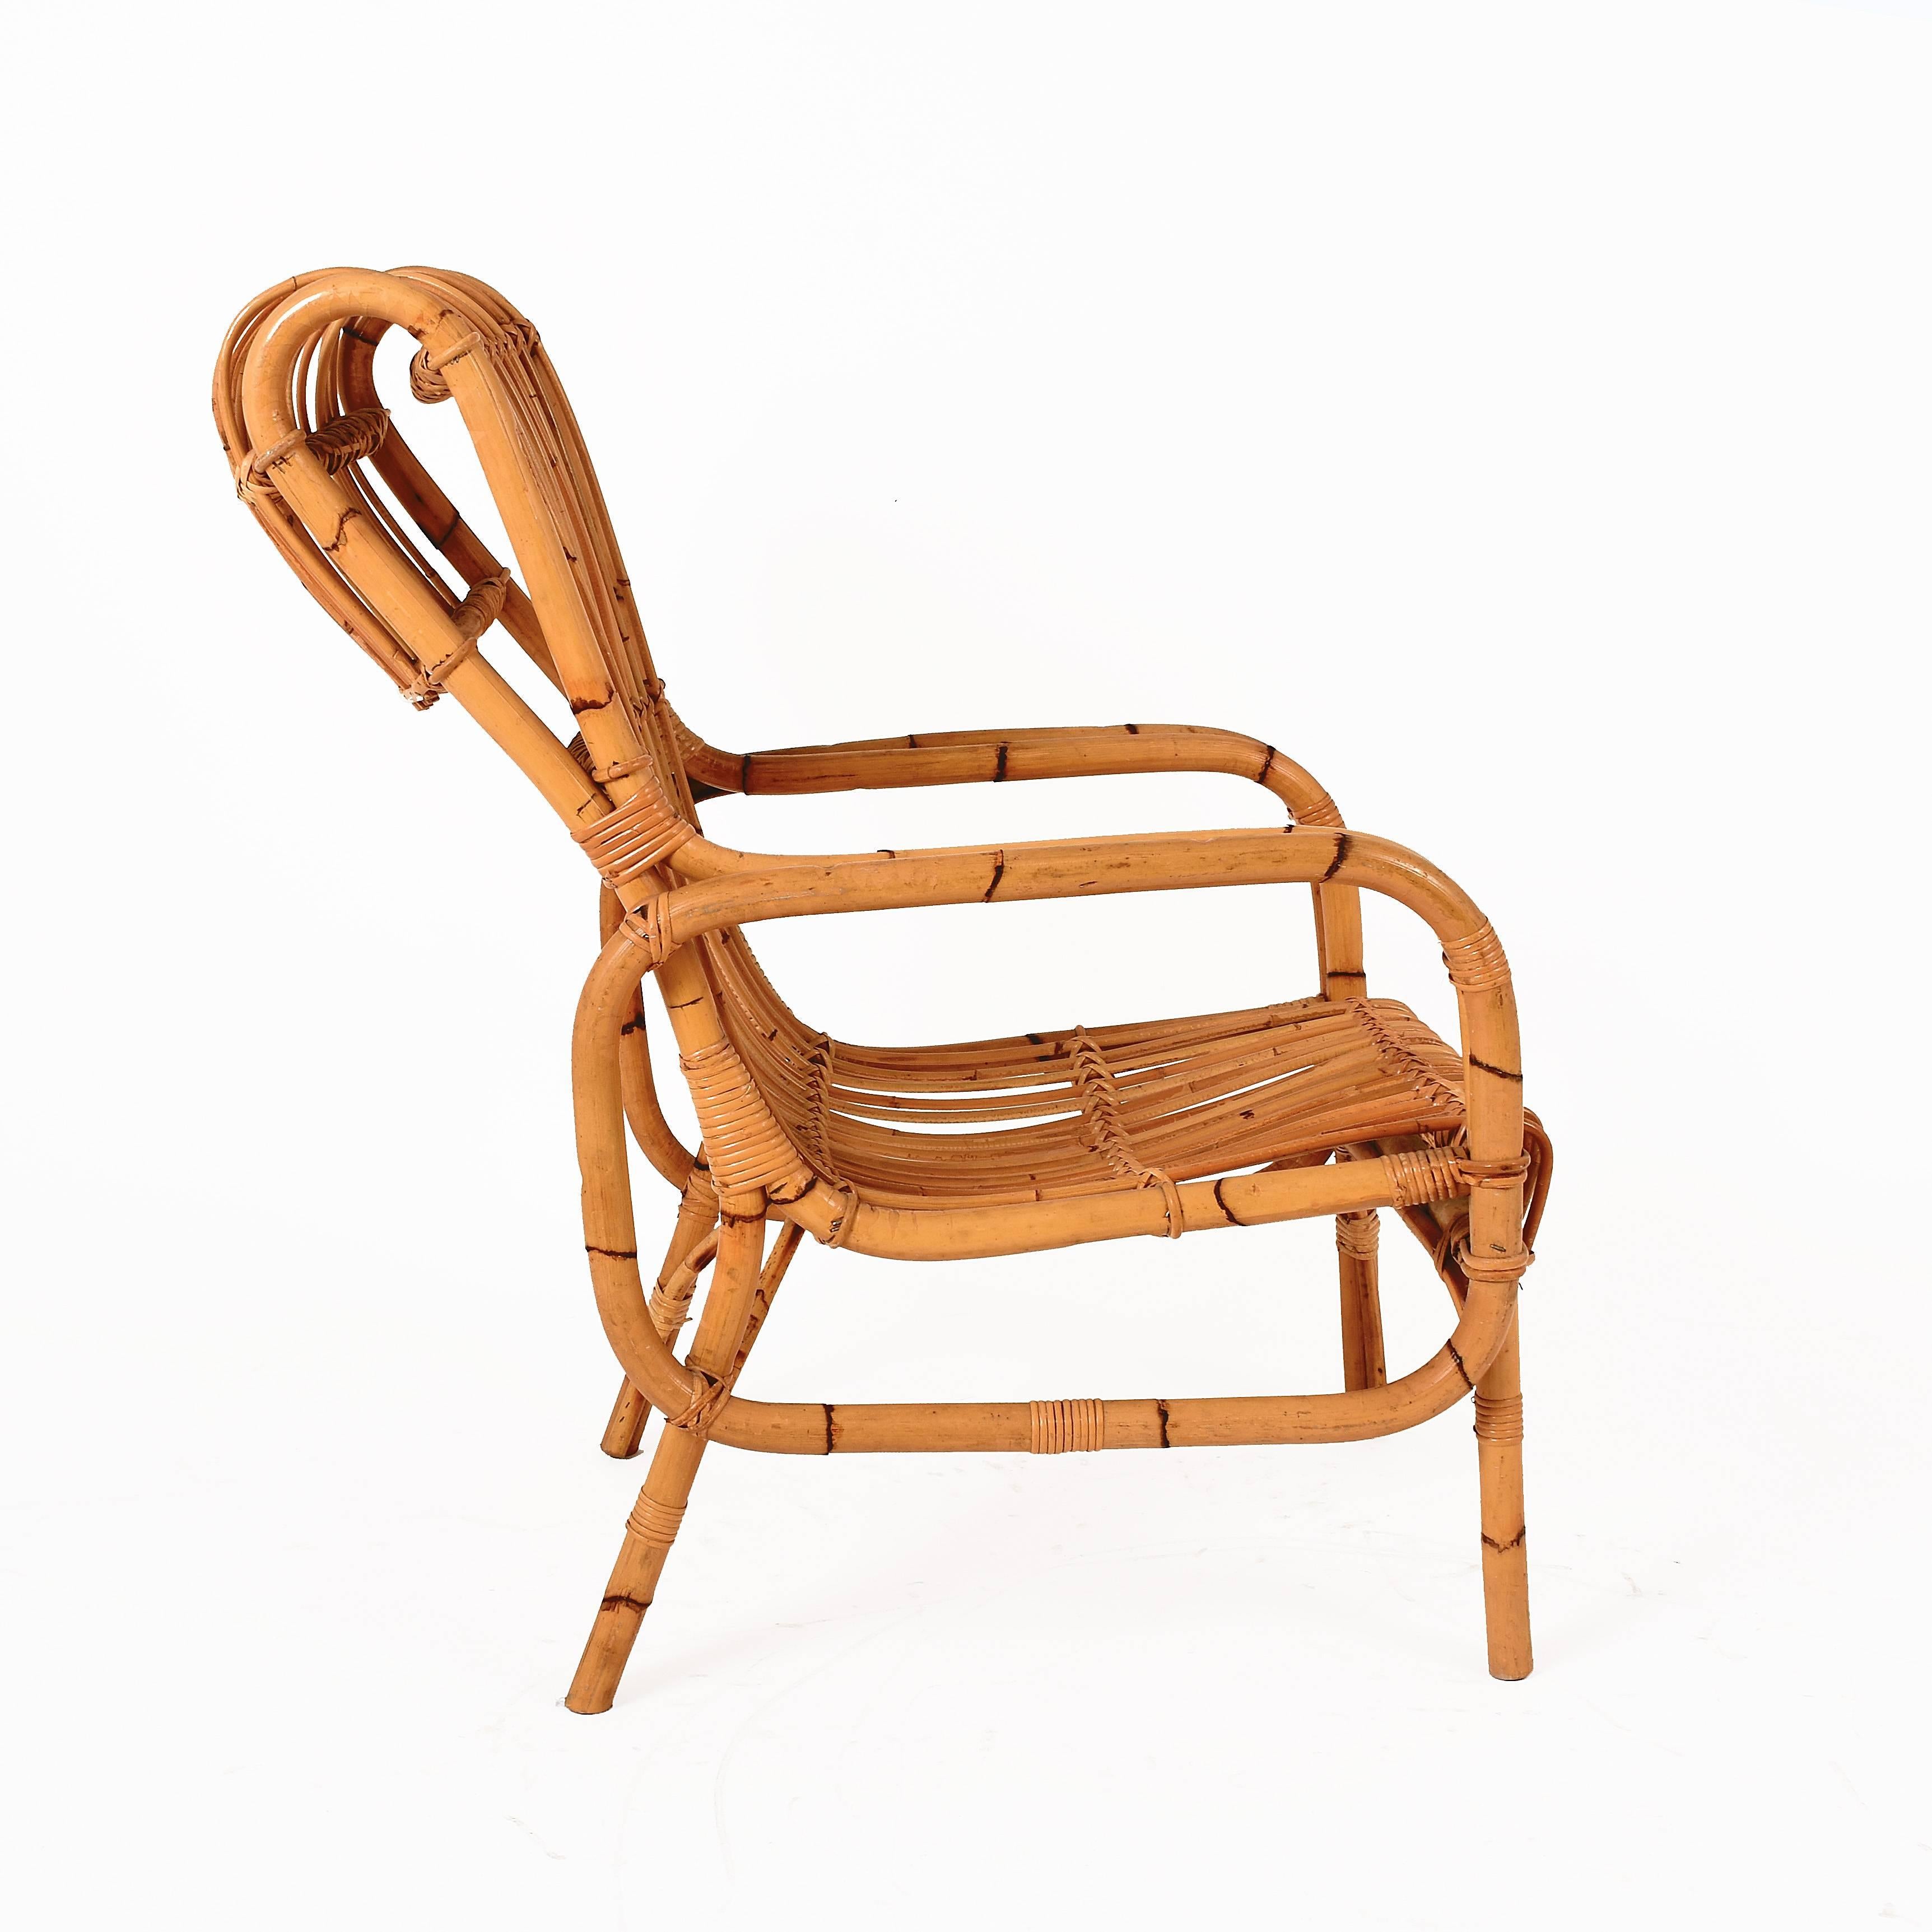 Italienischer Sessel aus Rattan und Bambus aus der Jahrhundertmitte. Dieser Artikel wurde in den 1960er Jahren in Italien hergestellt.

Die Sitzfläche besteht aus dünnen Rattan-Elementen, während die Strukturelemente aus Bambus mit einem